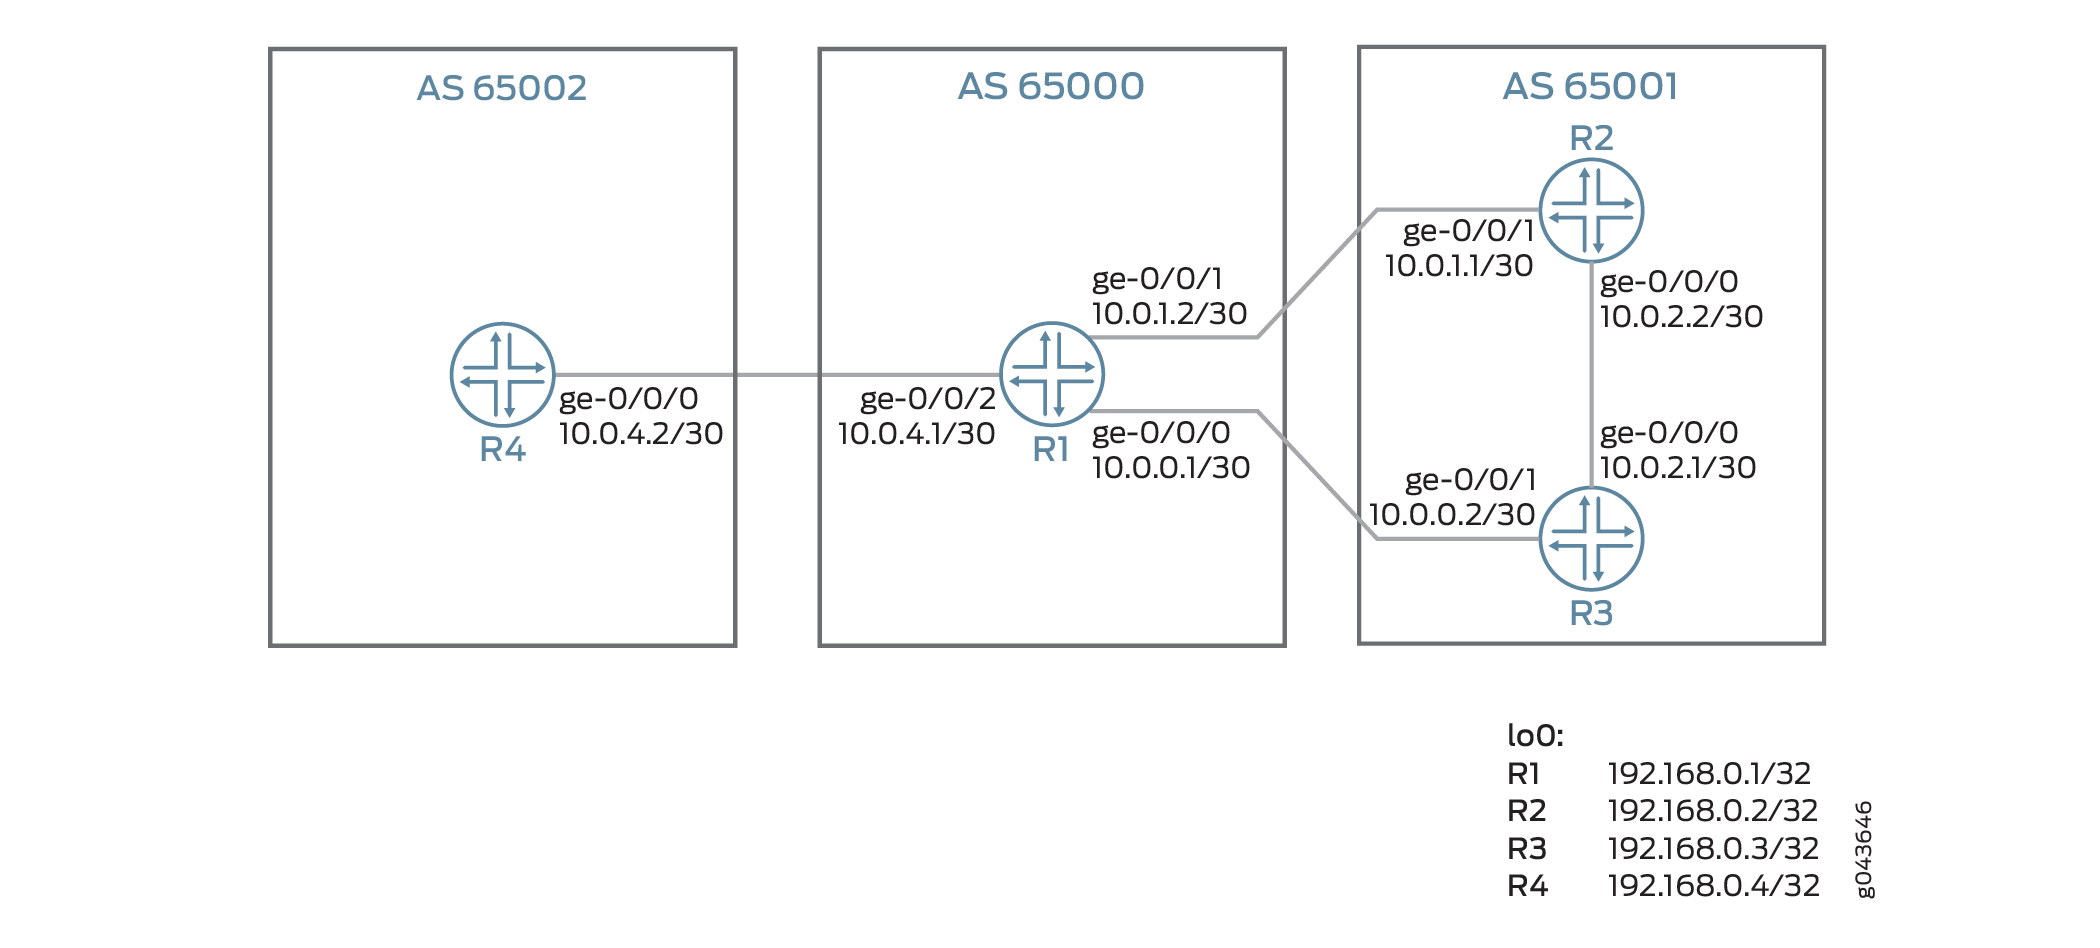 Configuração de uma política para anunciar largura de banda agregada em links BGP externos para balanceamento de carga